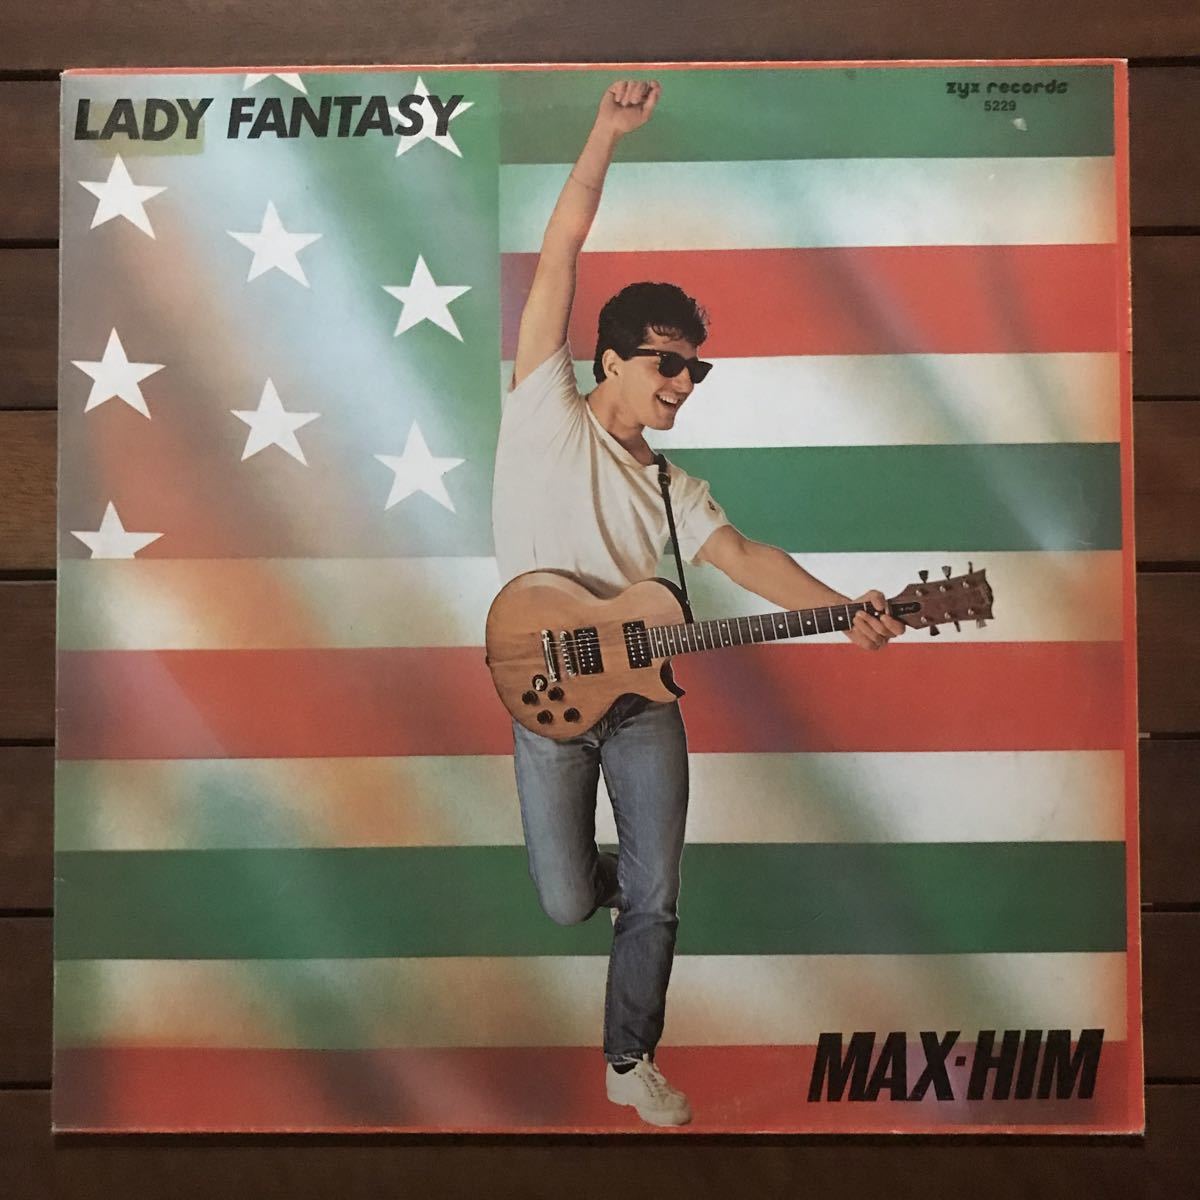 ●【r&b】Max-Him / Lady Fantasy［12inch］オリジナル盤《3-1-53 9595》